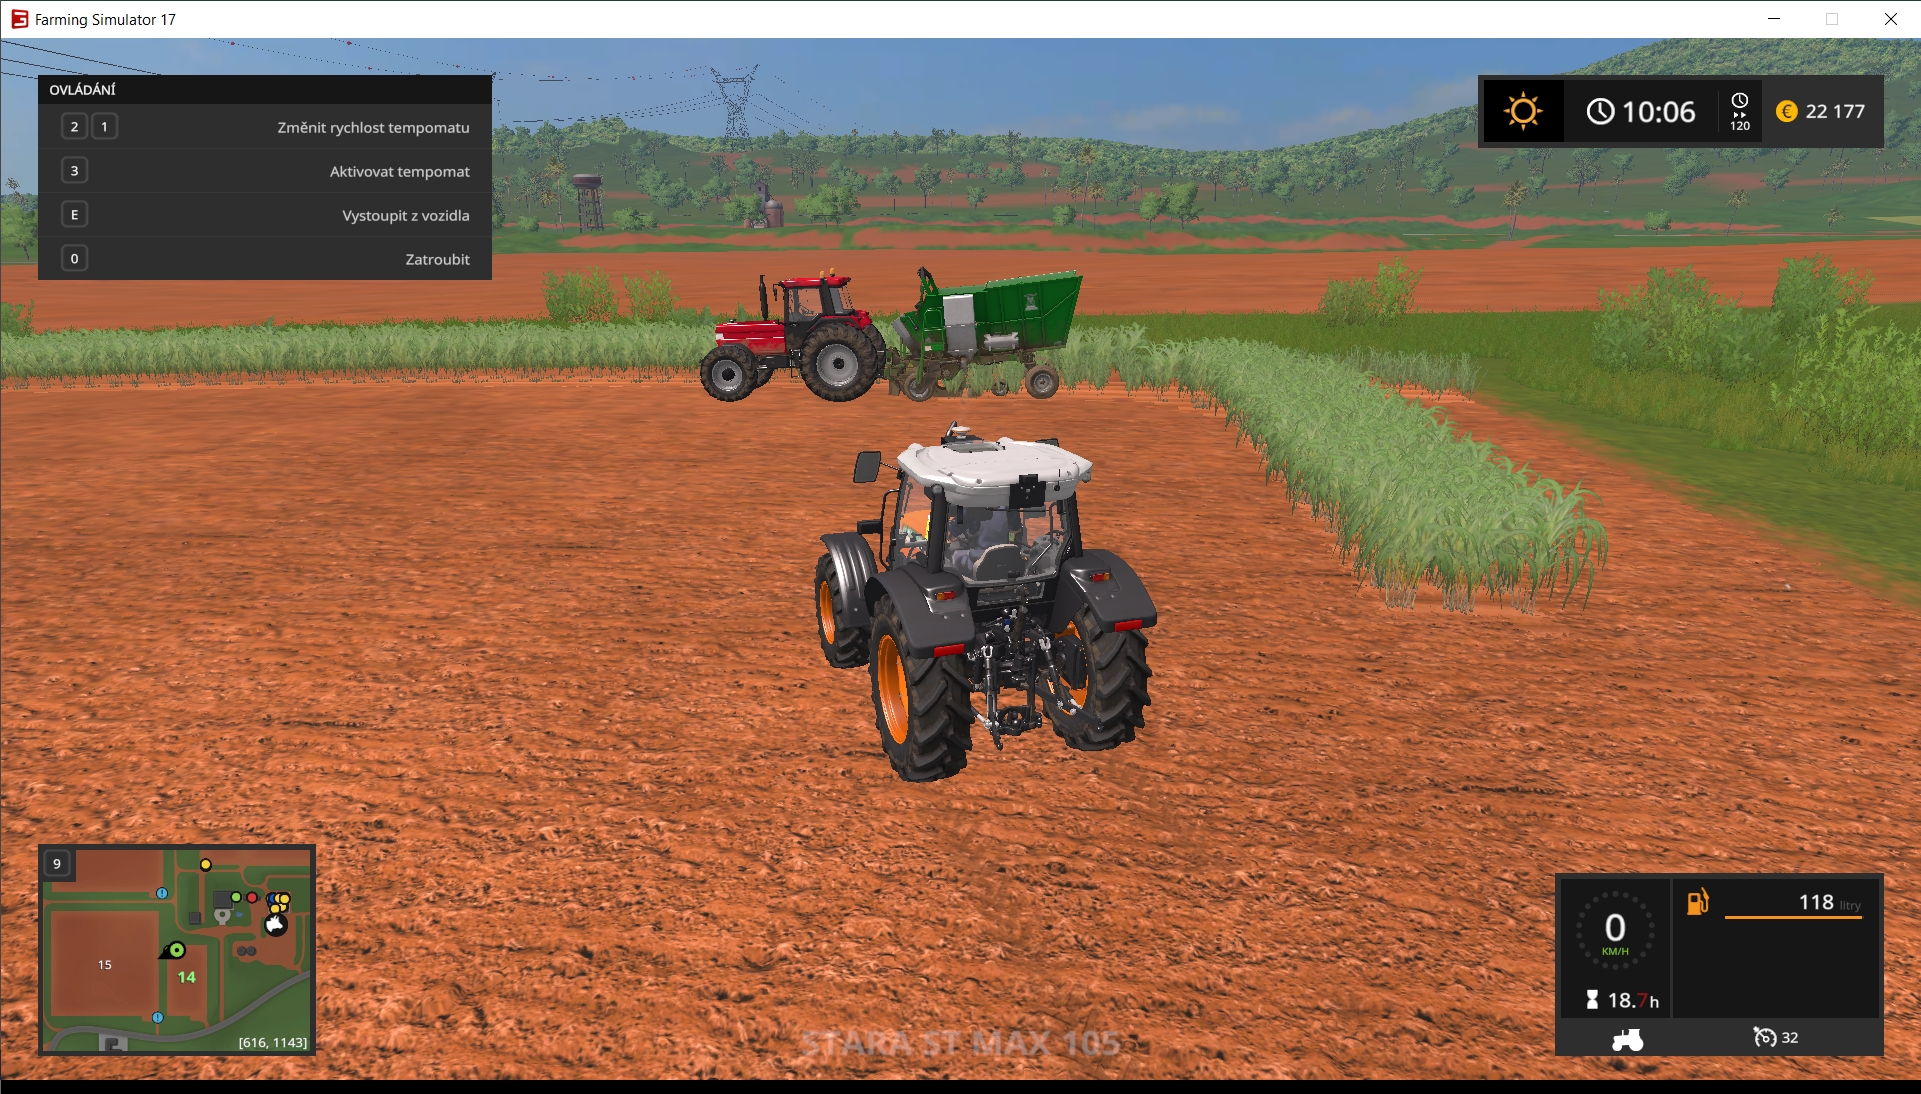 Přestože je hra Farming Simulator velmi komplexní a rozsáhlá, řídí se jasnými pravidly, která si můžete projít v bohaté nápovědě dostupné v češtině. V každém okamžiku máte také k dispozici přehled možných akcí a ovládacích prvků, stejně jako mapu a informace o aktuálně používaném stroji. | Zdroj: Farming Simulator 17 Platinum